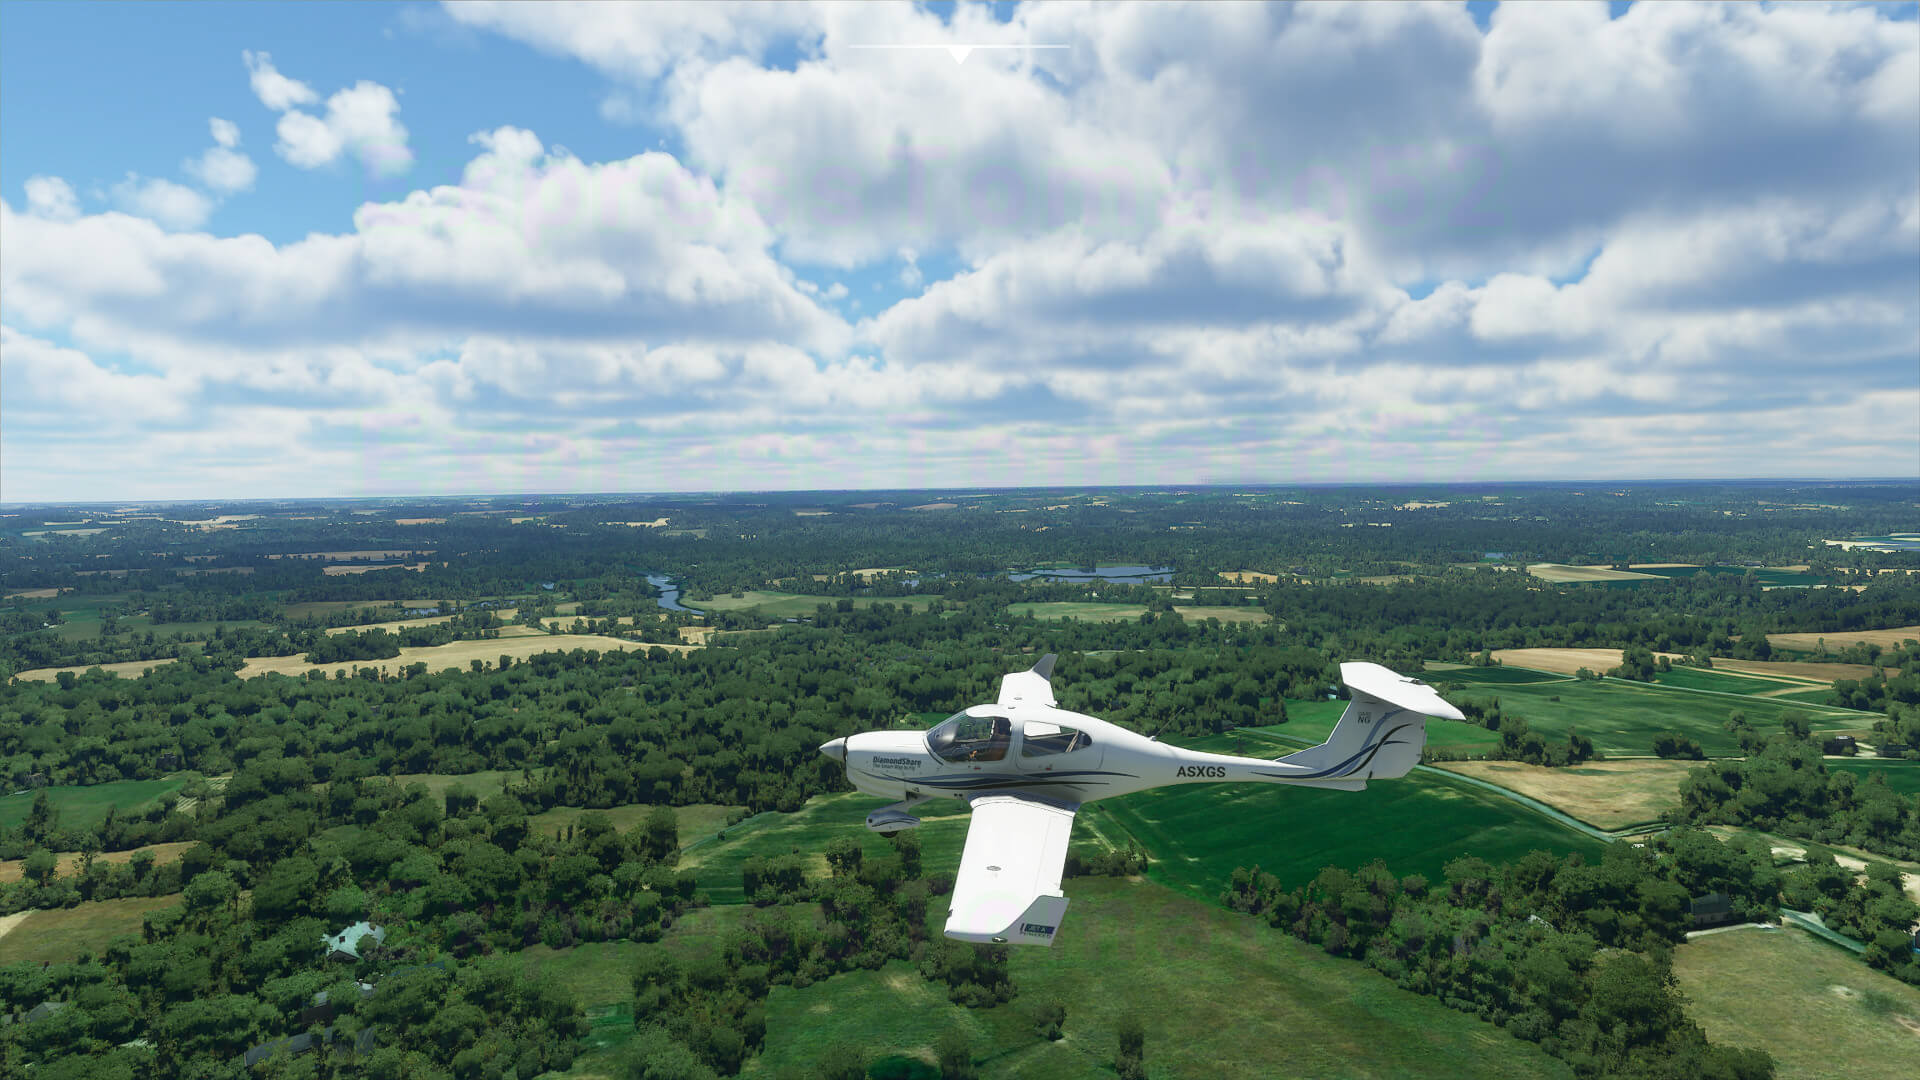 《微軟飛行模擬》A測版本截圖 雲海景觀令人驚歎